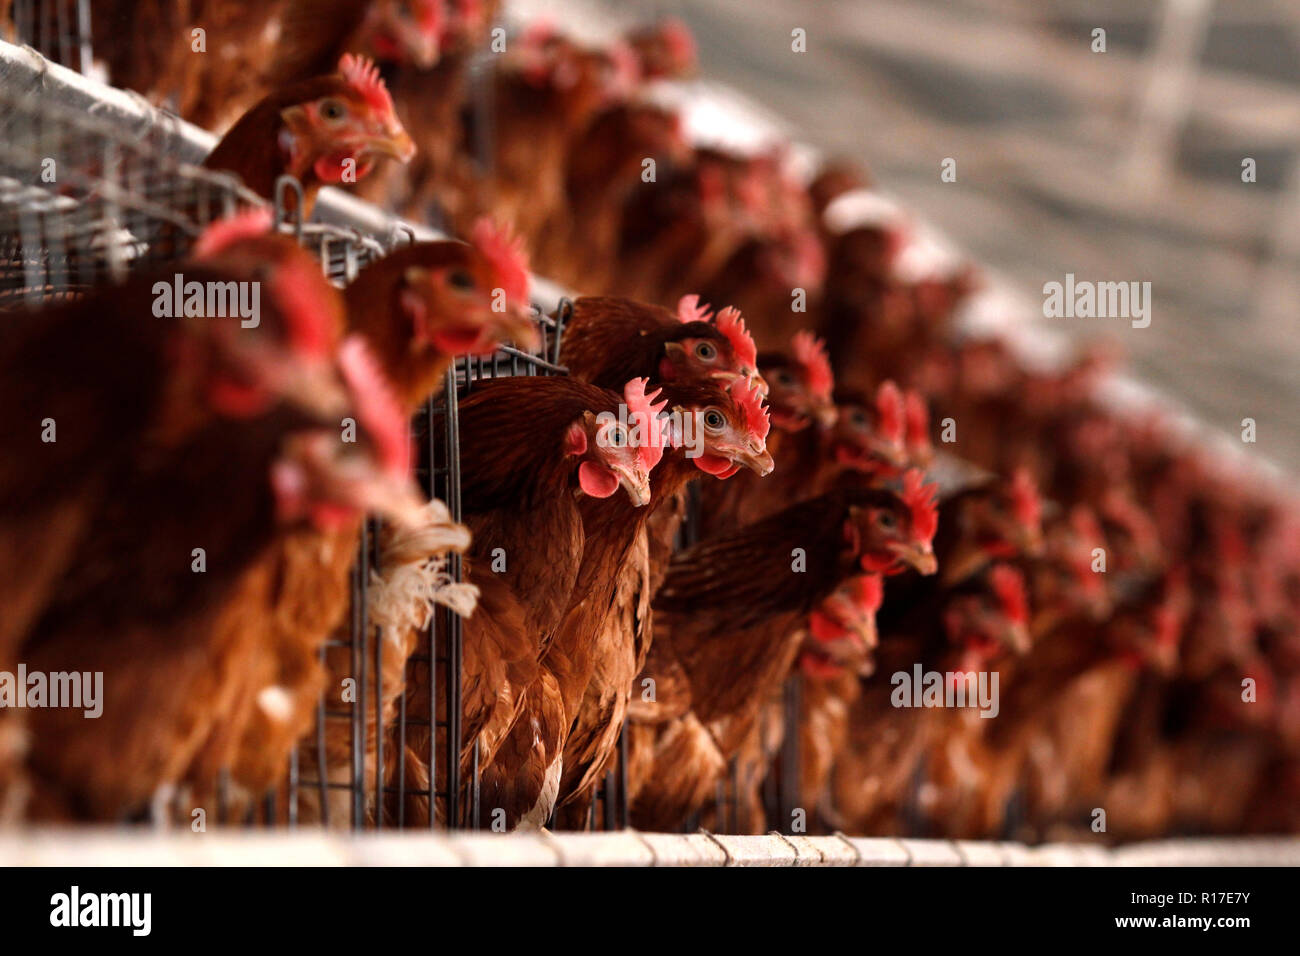 MENDOZA, Argentina, 13 agosto 2014. Incubatoio di pollo Pollame dedicata alla produzione di uova, Luzuriaga della città di Maipú, Mendoza. Foto: Axel Llore Foto Stock